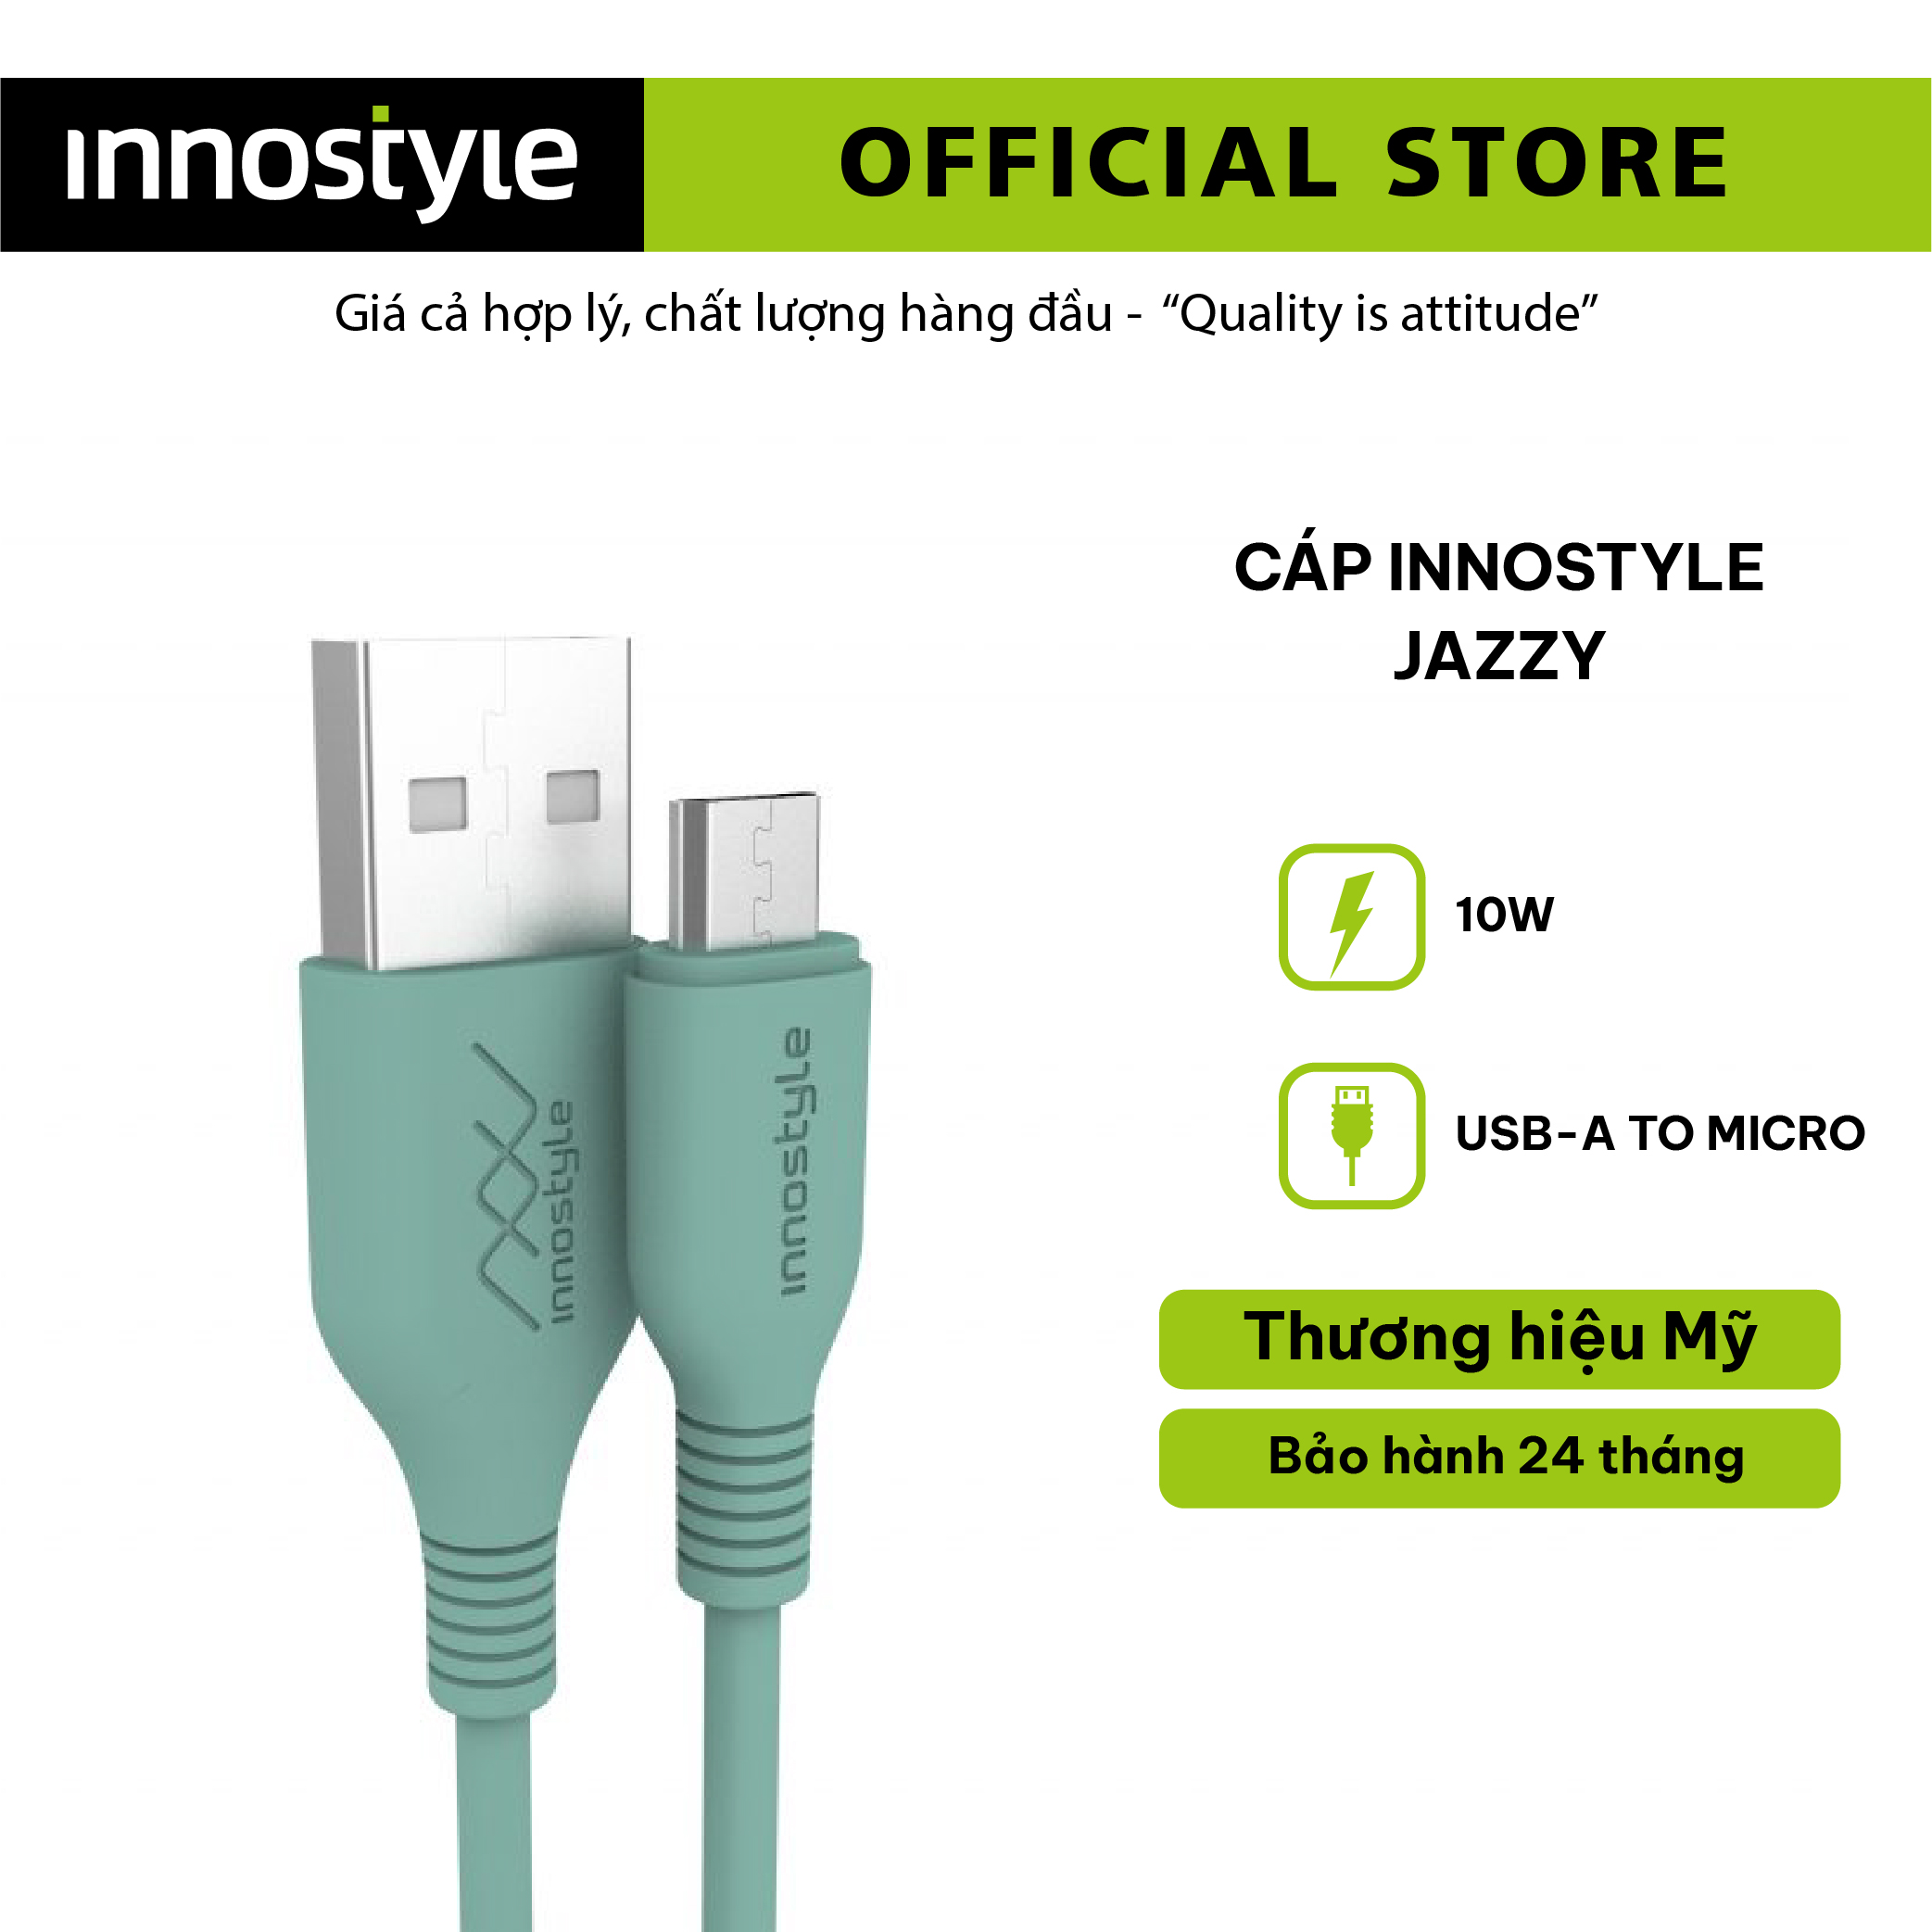 Cáp Innostyle Jazzy Usb-A To Micro 1.2m Công Suất 10w – Hàng Chính Hãng